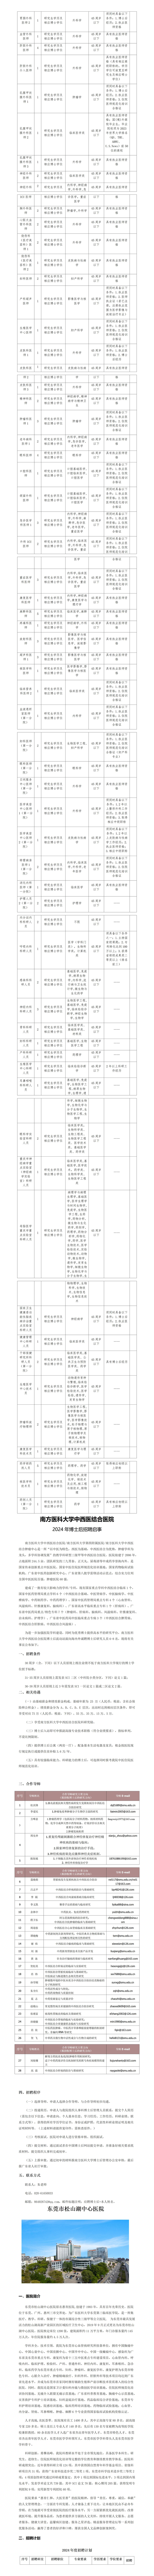 11月份宣传文件——西安交通大学(1)_01(6).jpg